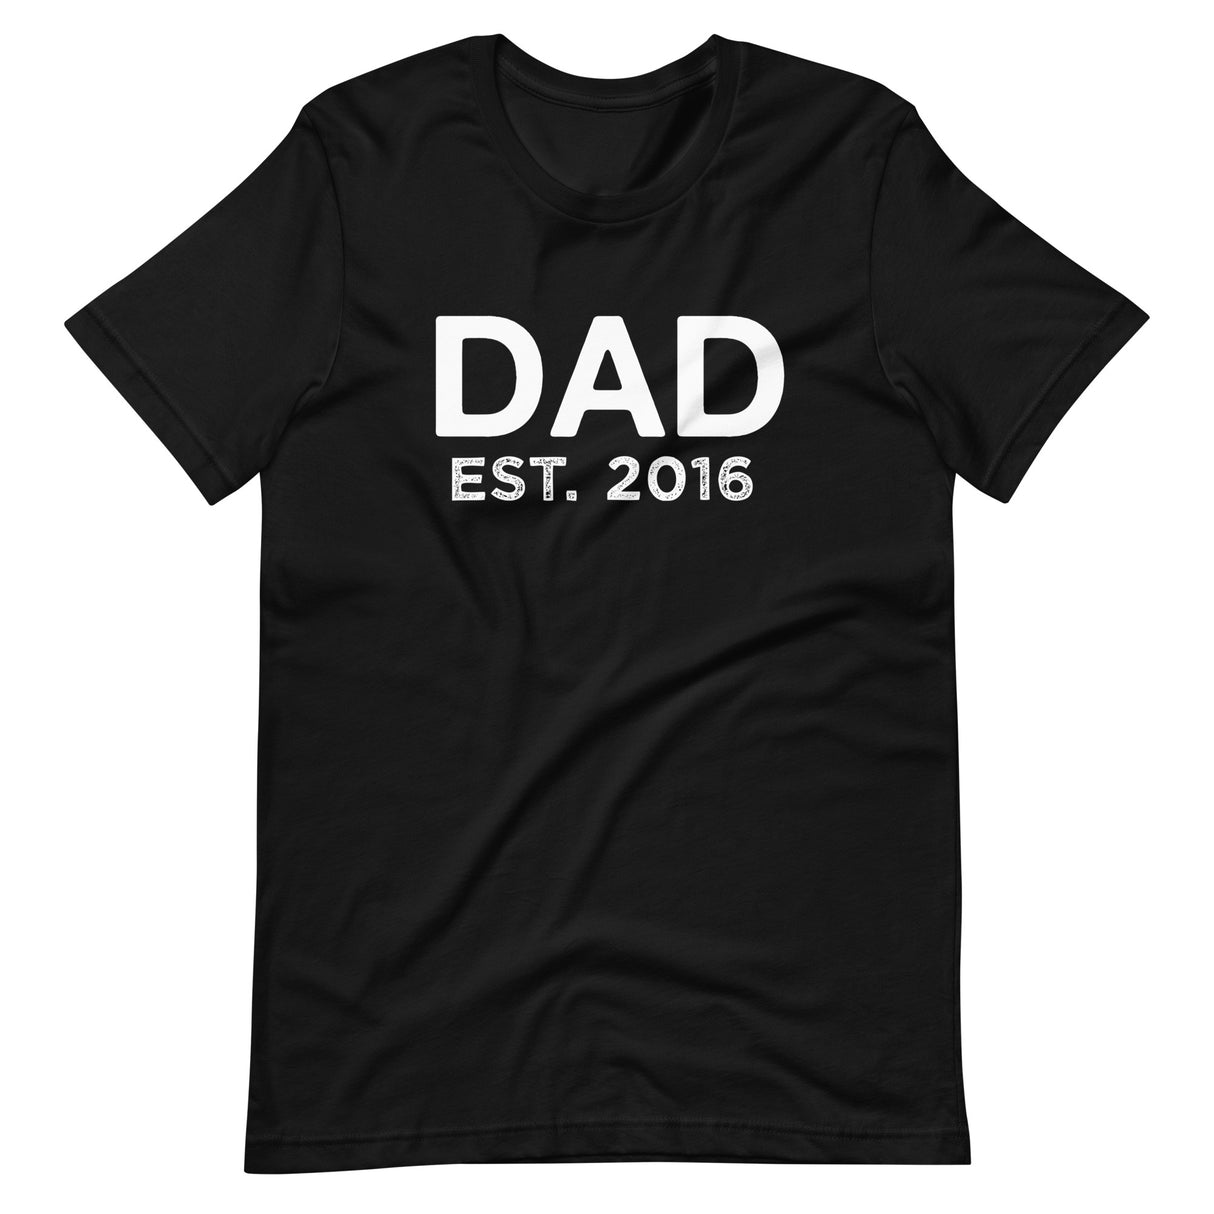 Dad Established 2016 Shirt